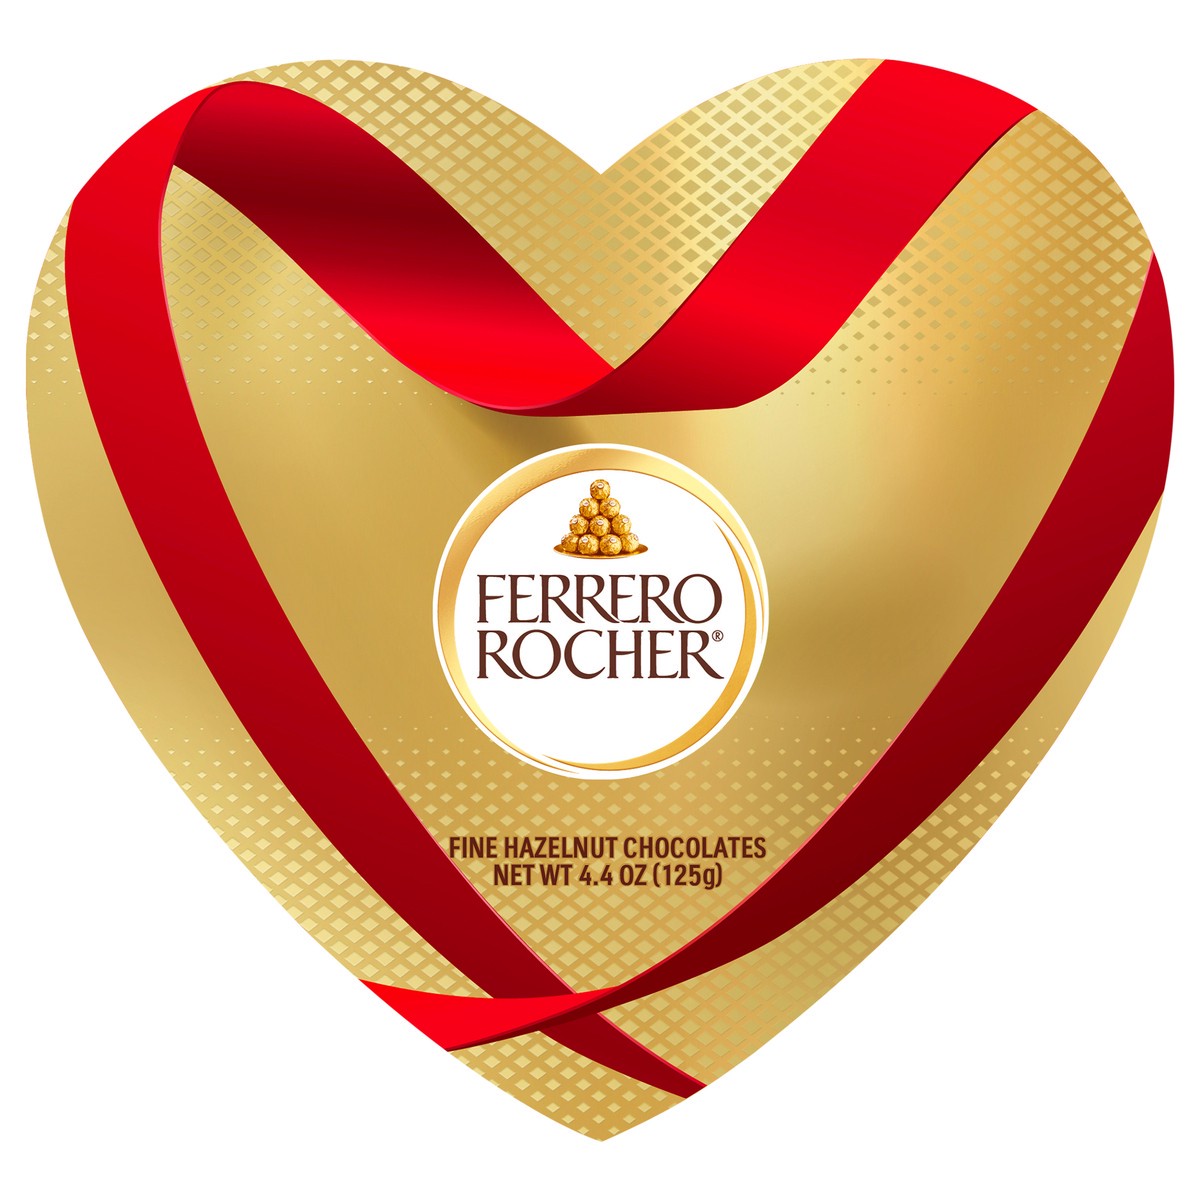 slide 1 of 3, Ferrero Rocher Fine Hazelnut Chocolates 4.4 oz, 4.4 oz